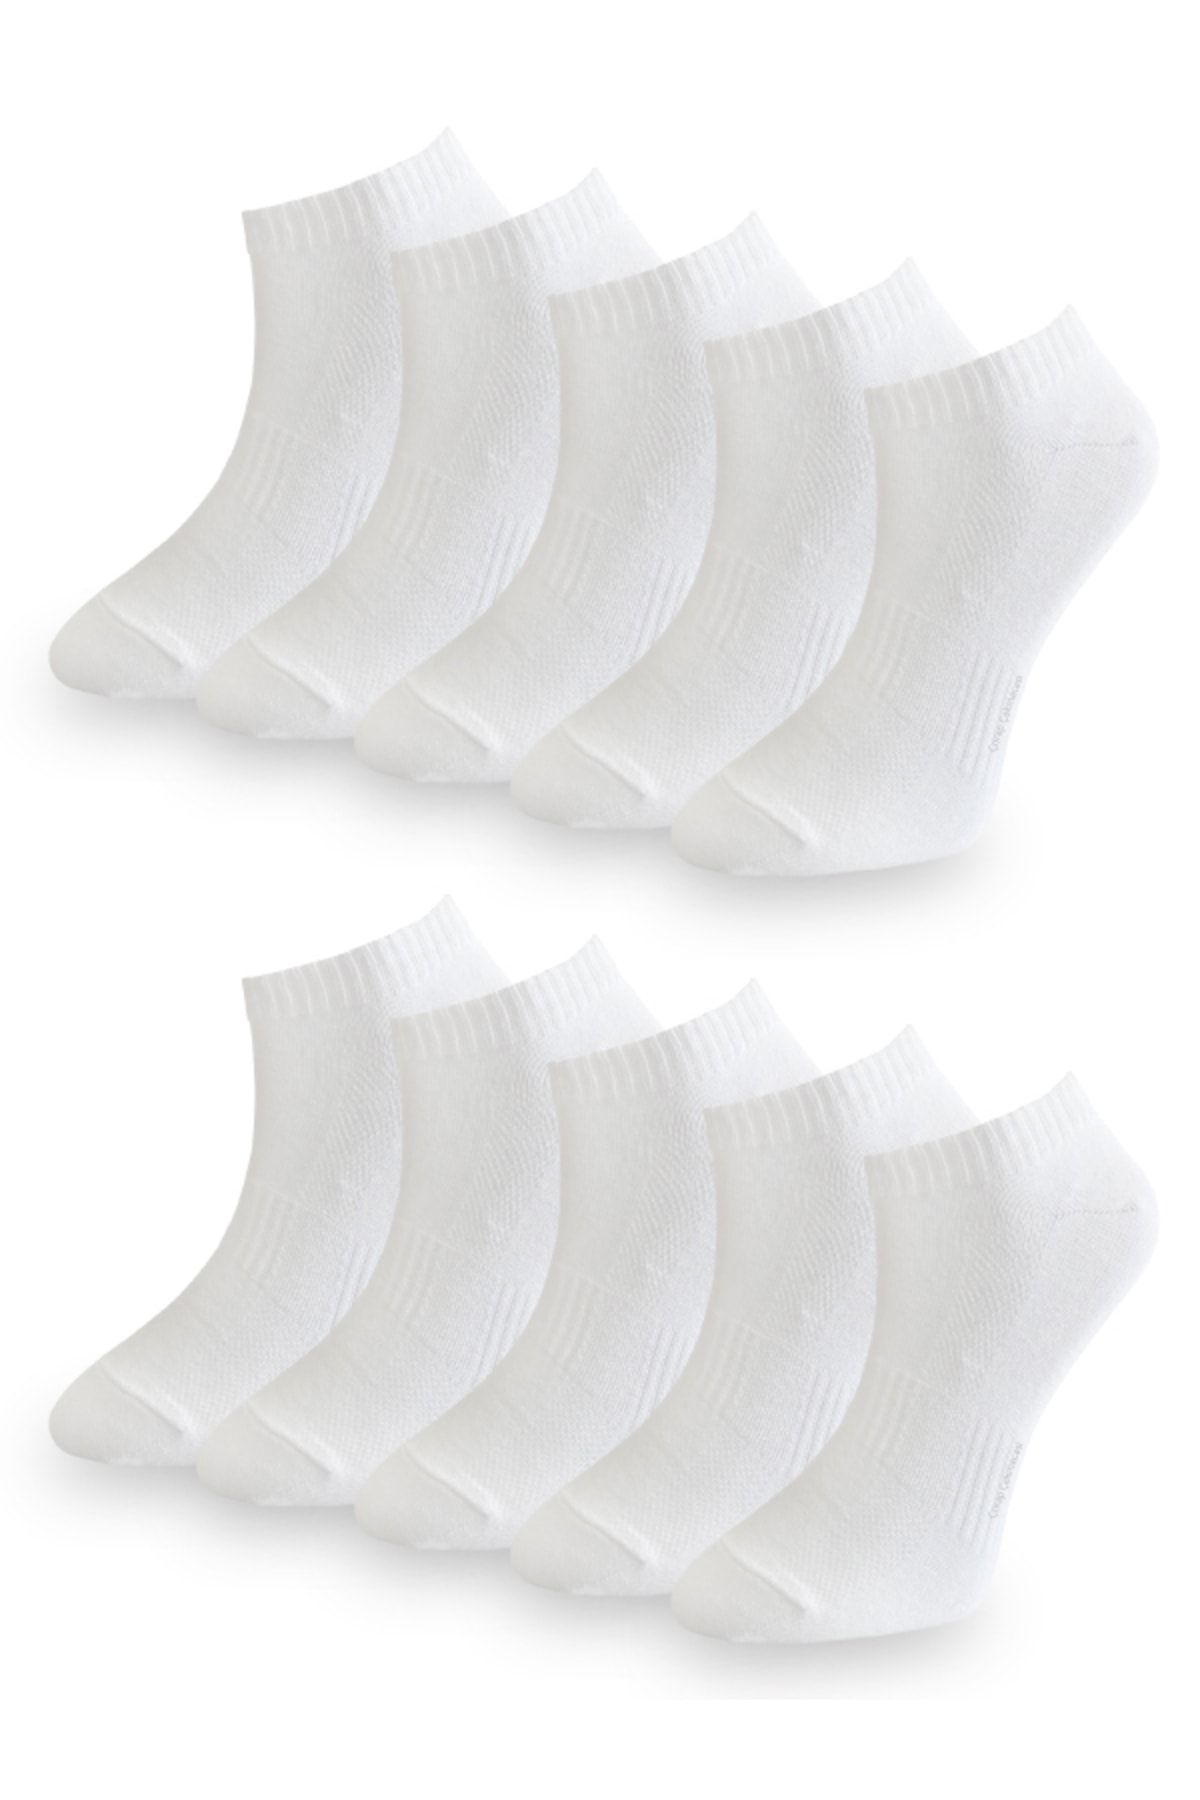 Çorap Çekmecesi Pamuklu Kısa Çorap Beyaz 10'lu